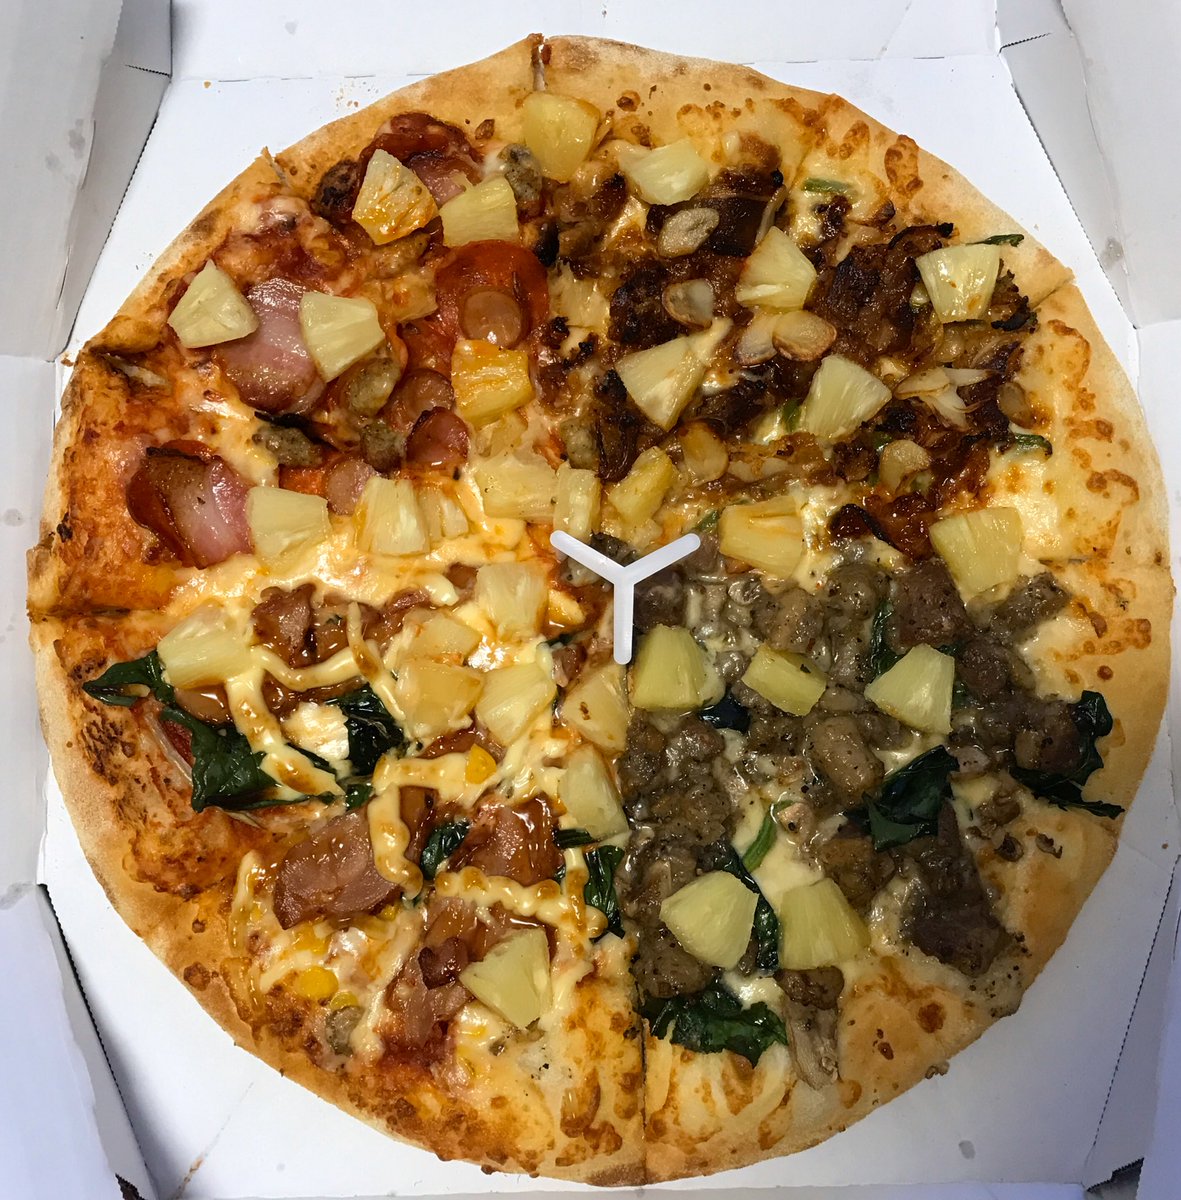 いつき 旅好き可愛いもの好き神戸っ子 ドミノピザ の肉4種ピザ クワトロミートマックス にパイナップル をトッピングして ハワイアンピザ に 手前の左側のが一番美味しかった 一人暮らしでピザlサイズは無謀だけど 楽天デリバリーの半額セールが